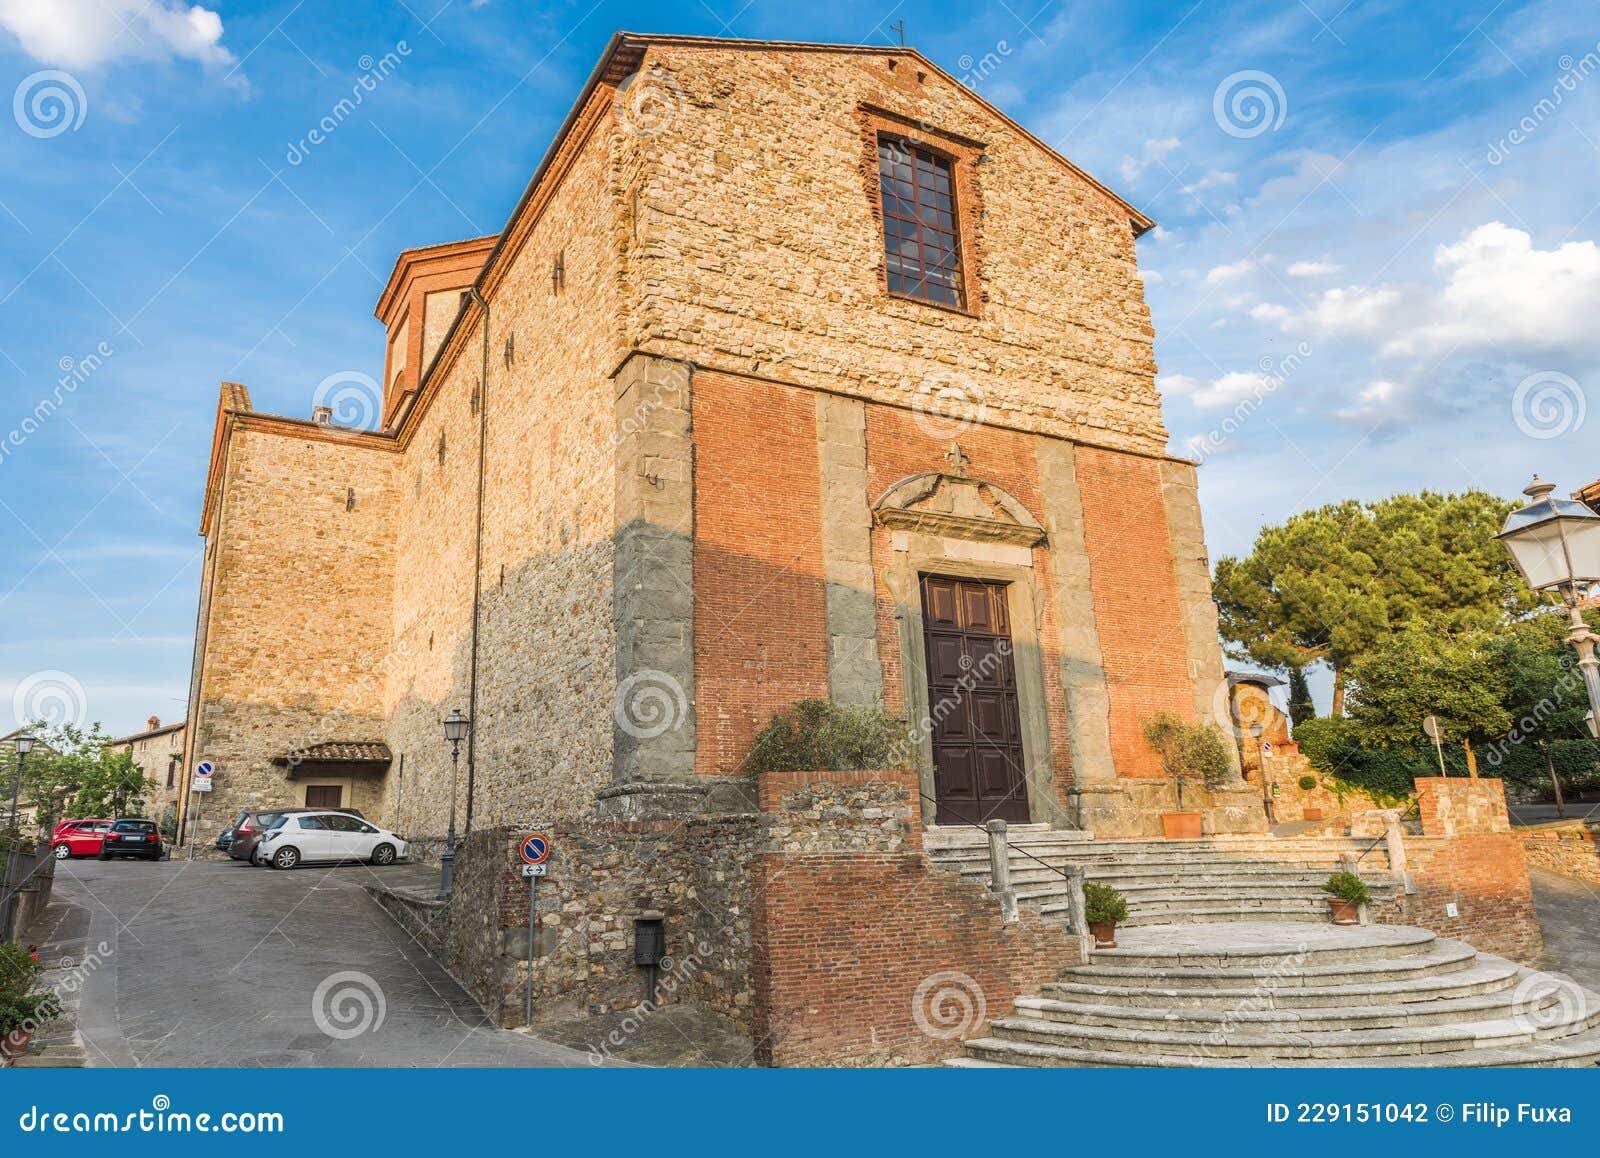 la collegiata church in lucignano town in italy